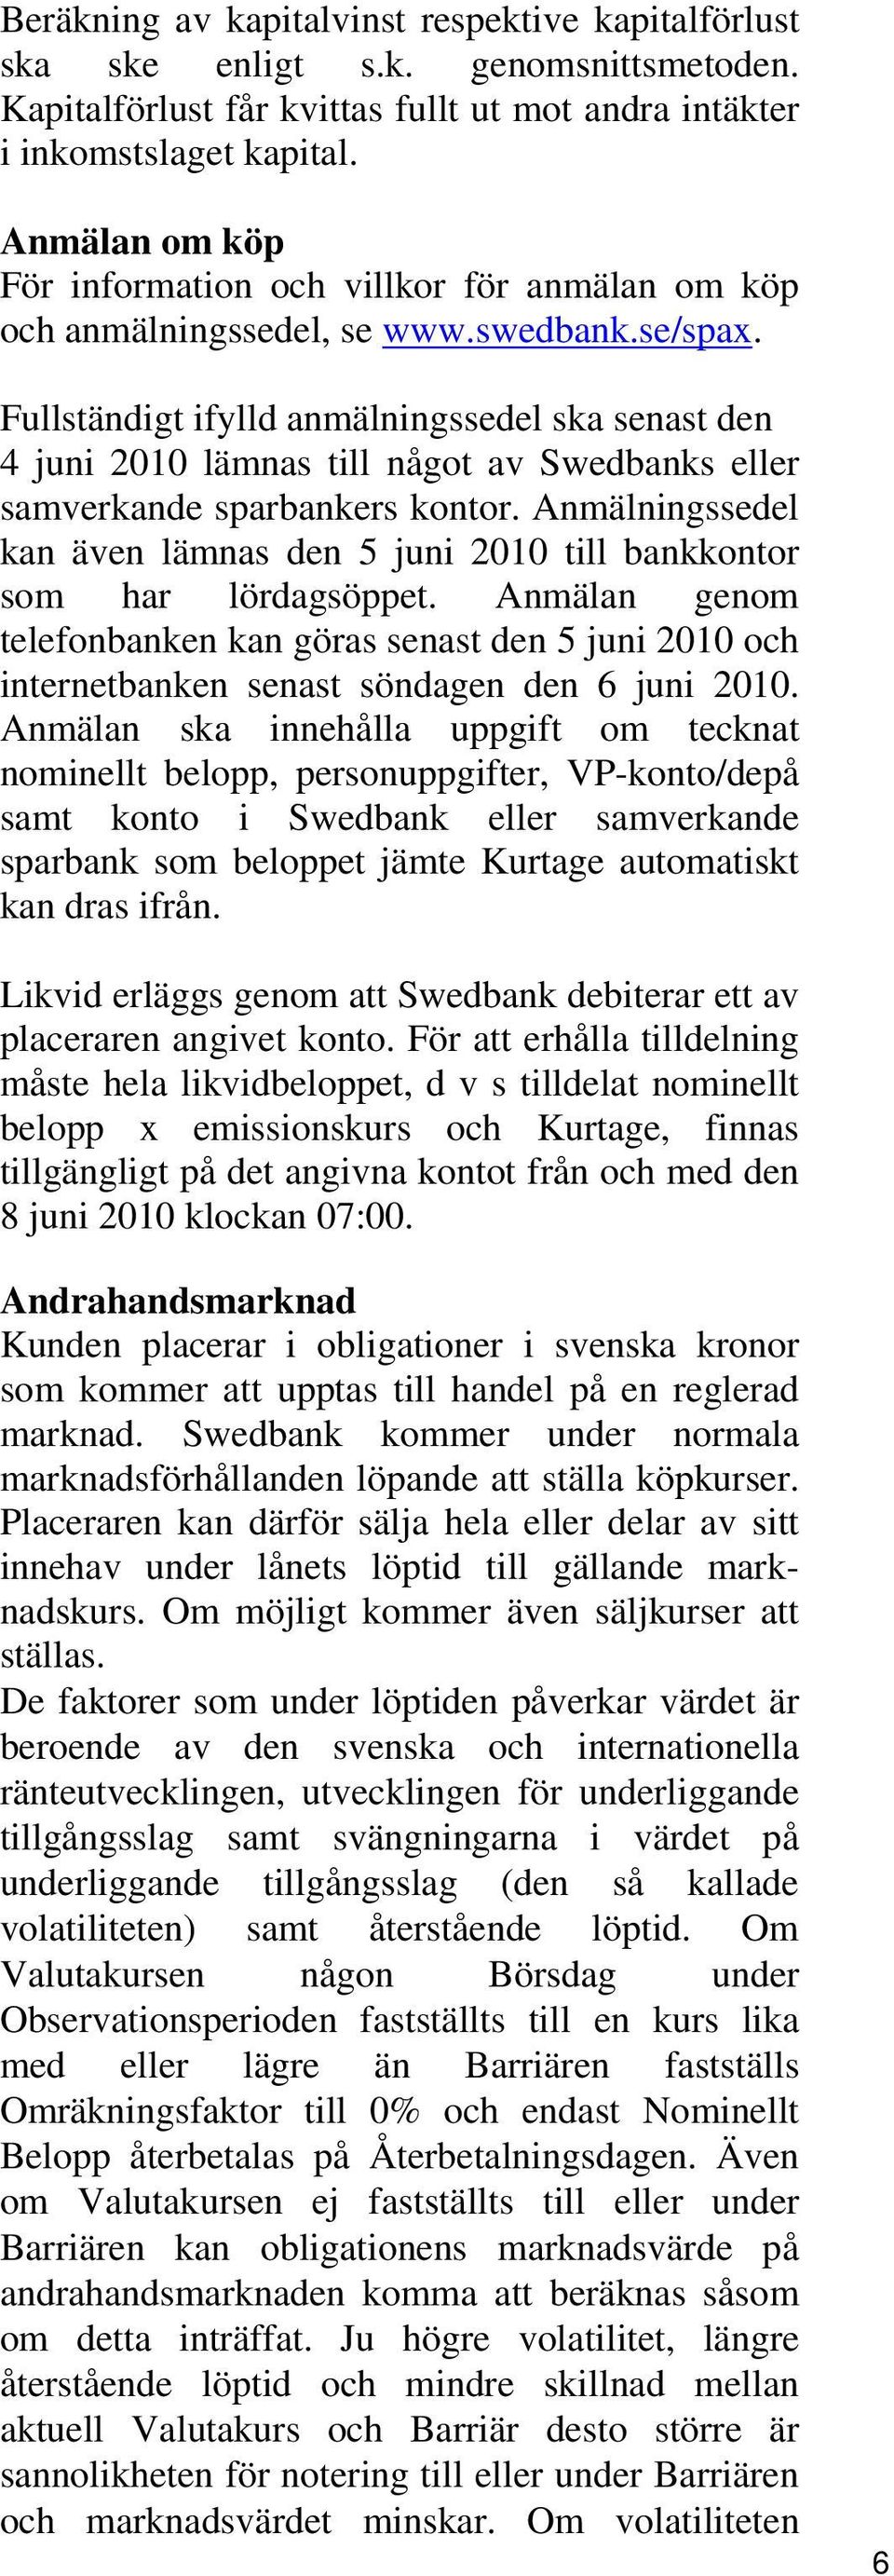 Fullständigt ifylld anmälningssedel ska senast den 4 juni 2010 lämnas till något av Swedbanks eller samverkande sparbankers kontor.